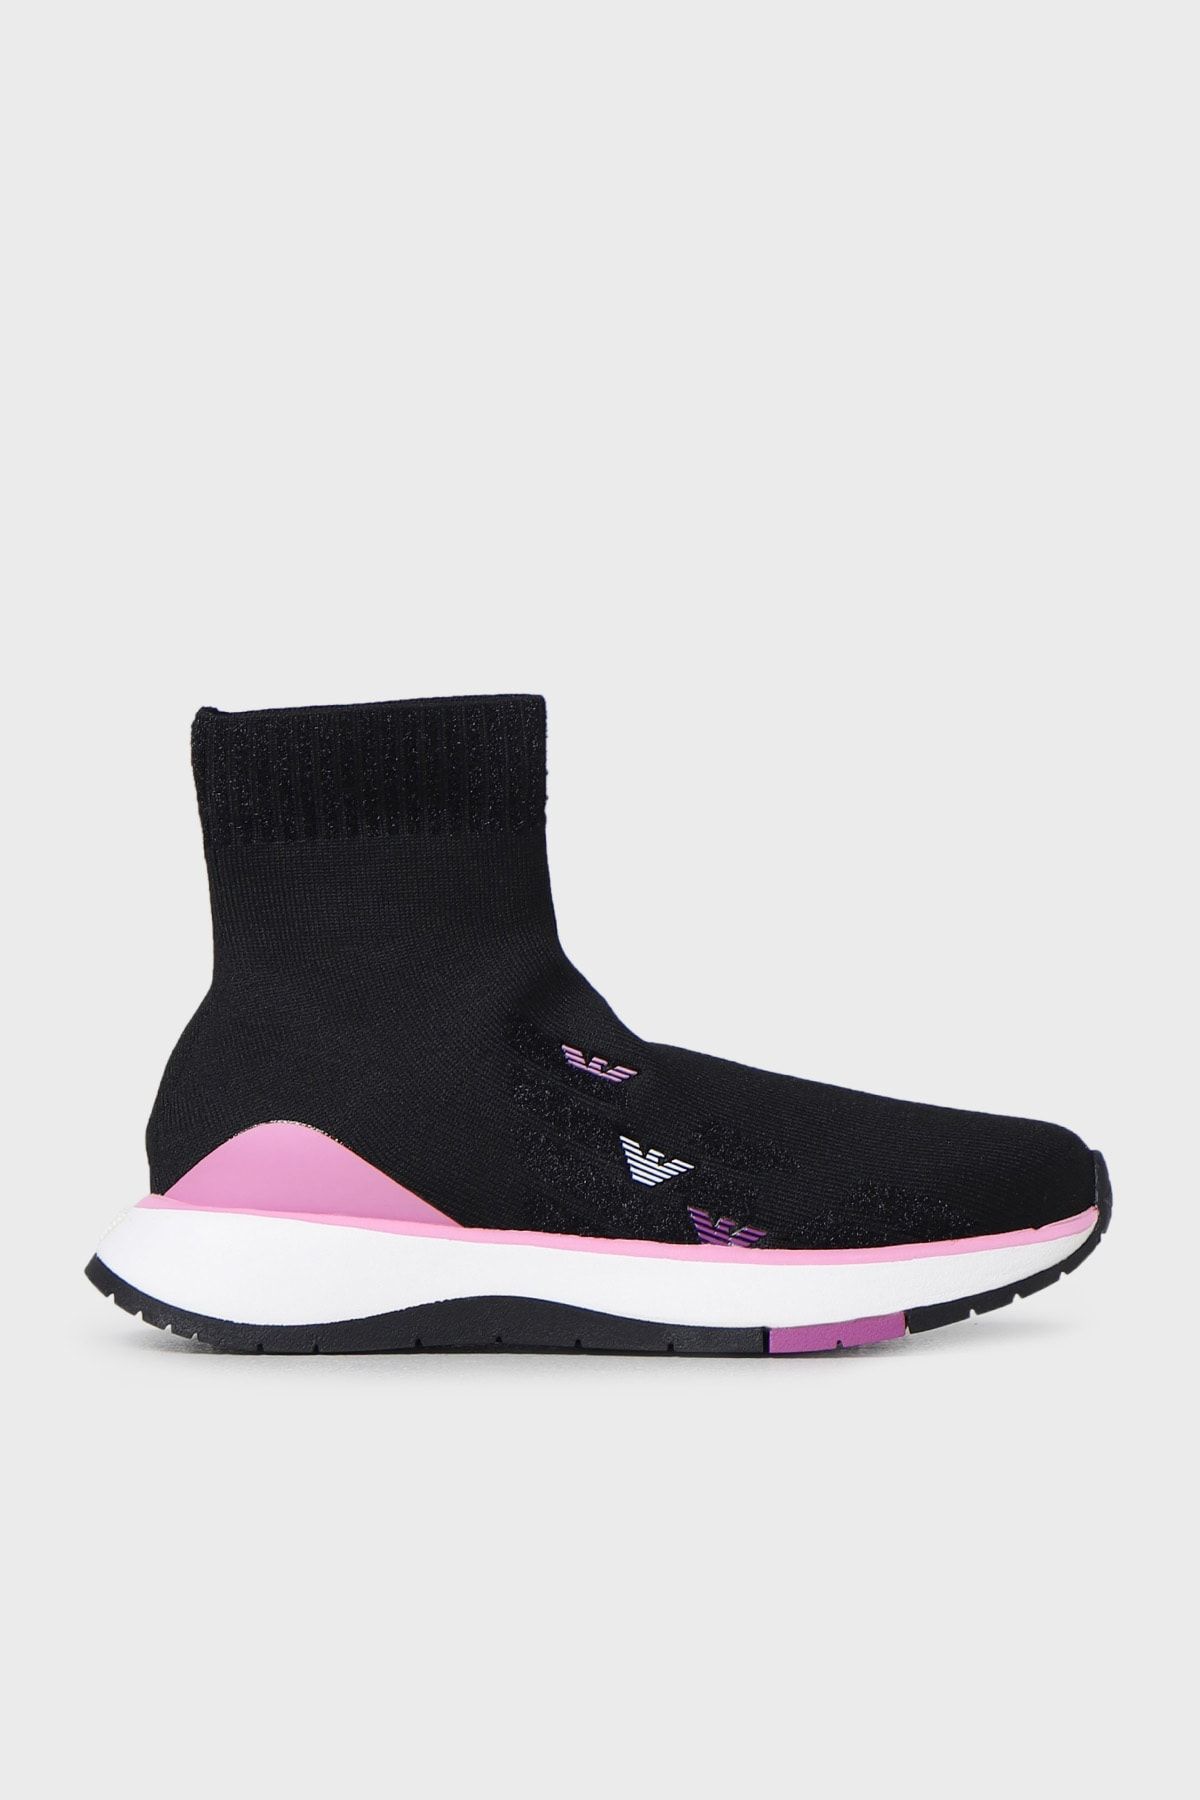 Emporio Armani Logolu Bilekli Sneaker Ayakkabı Ayakkabı X3z056 Xn670 S189